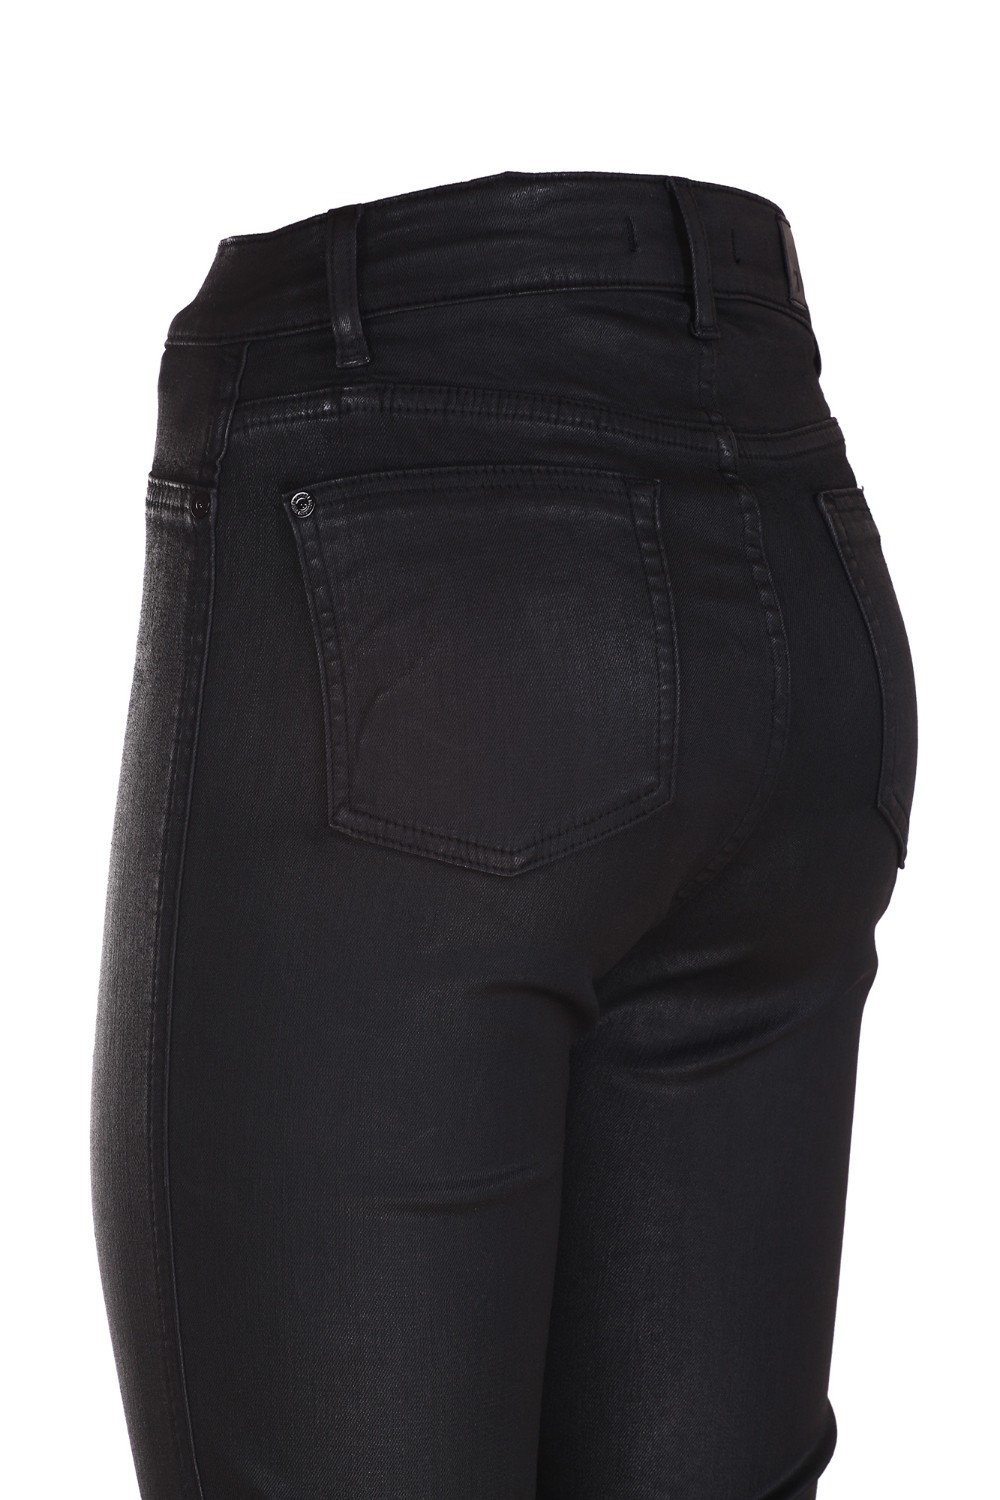 shop SEVEN  Pantalone: Seven jeans nero in cotone con fondo a zampa.
Chiusura con zip e bottone.
Cinque tasche.
Effetto spalmato.
Slim fit.
Composizione: 100% cotone.
Fabbricato in Tunisia.. JSWBV500BL-N number 8822574